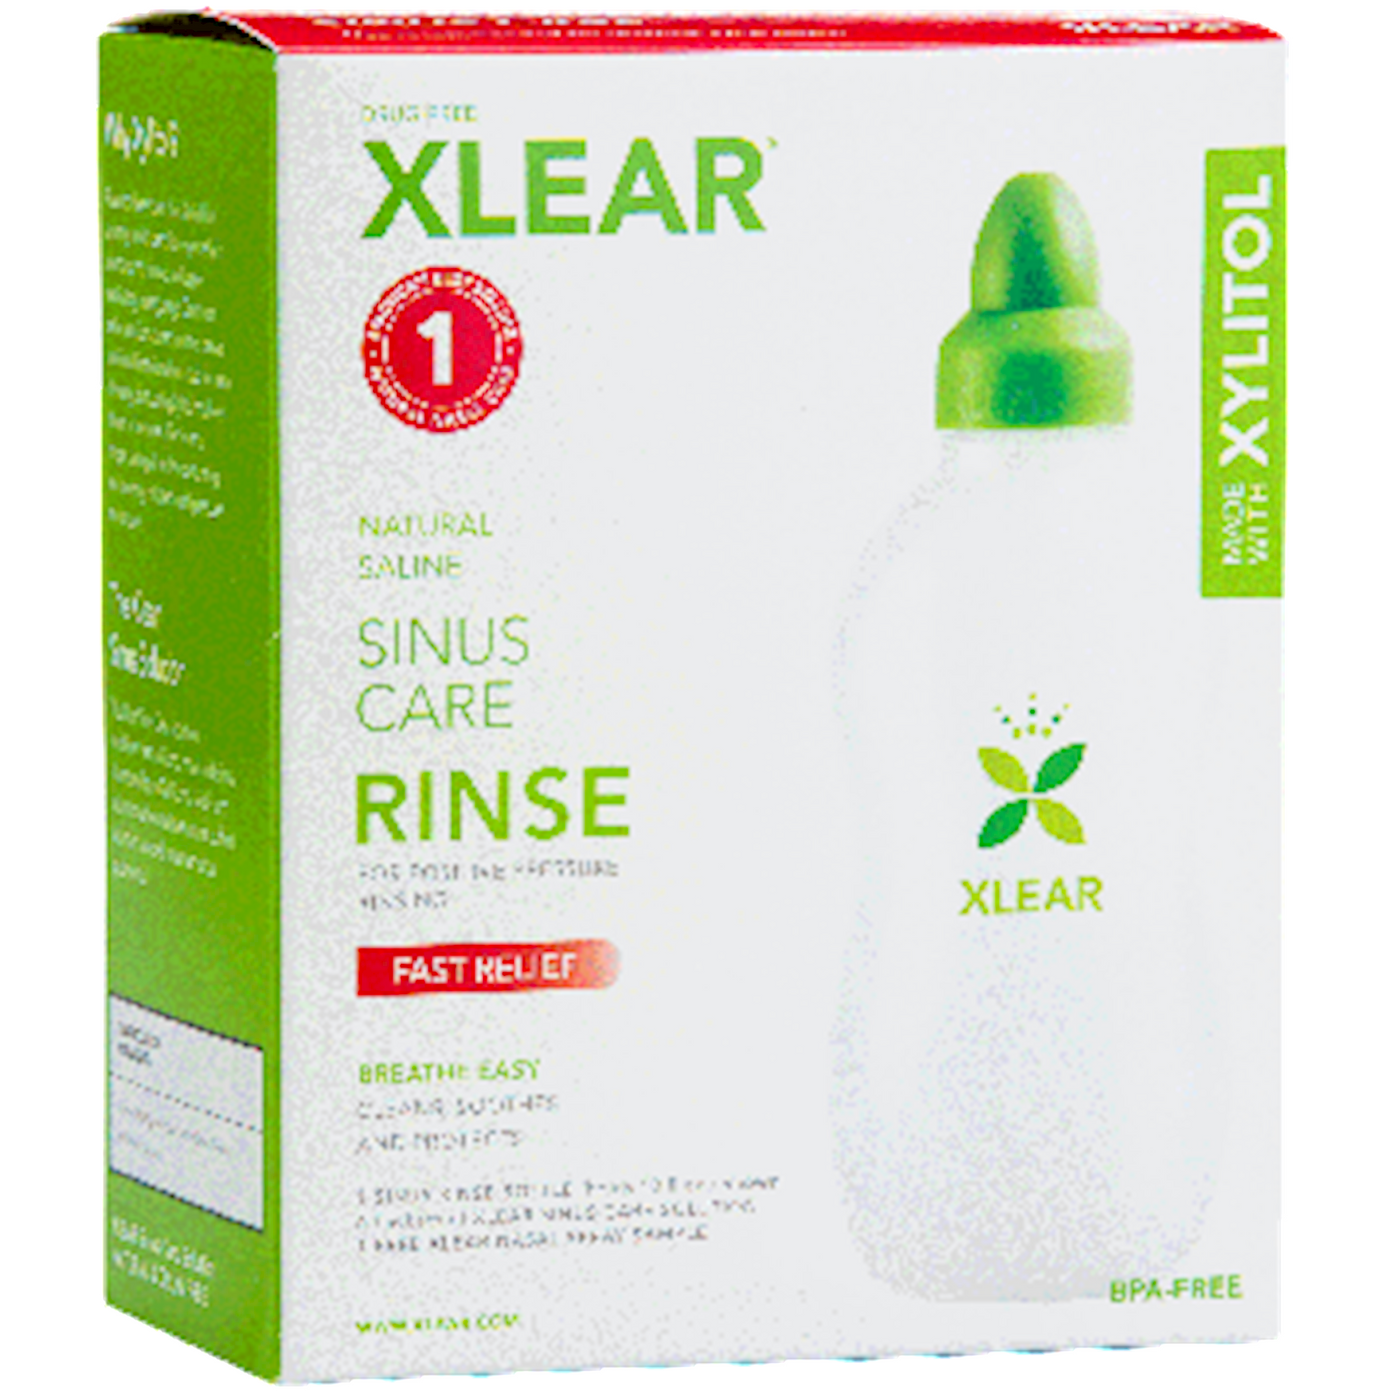 Xlear Sinus Netirinse Bottle plus 6 pkts Curated Wellness